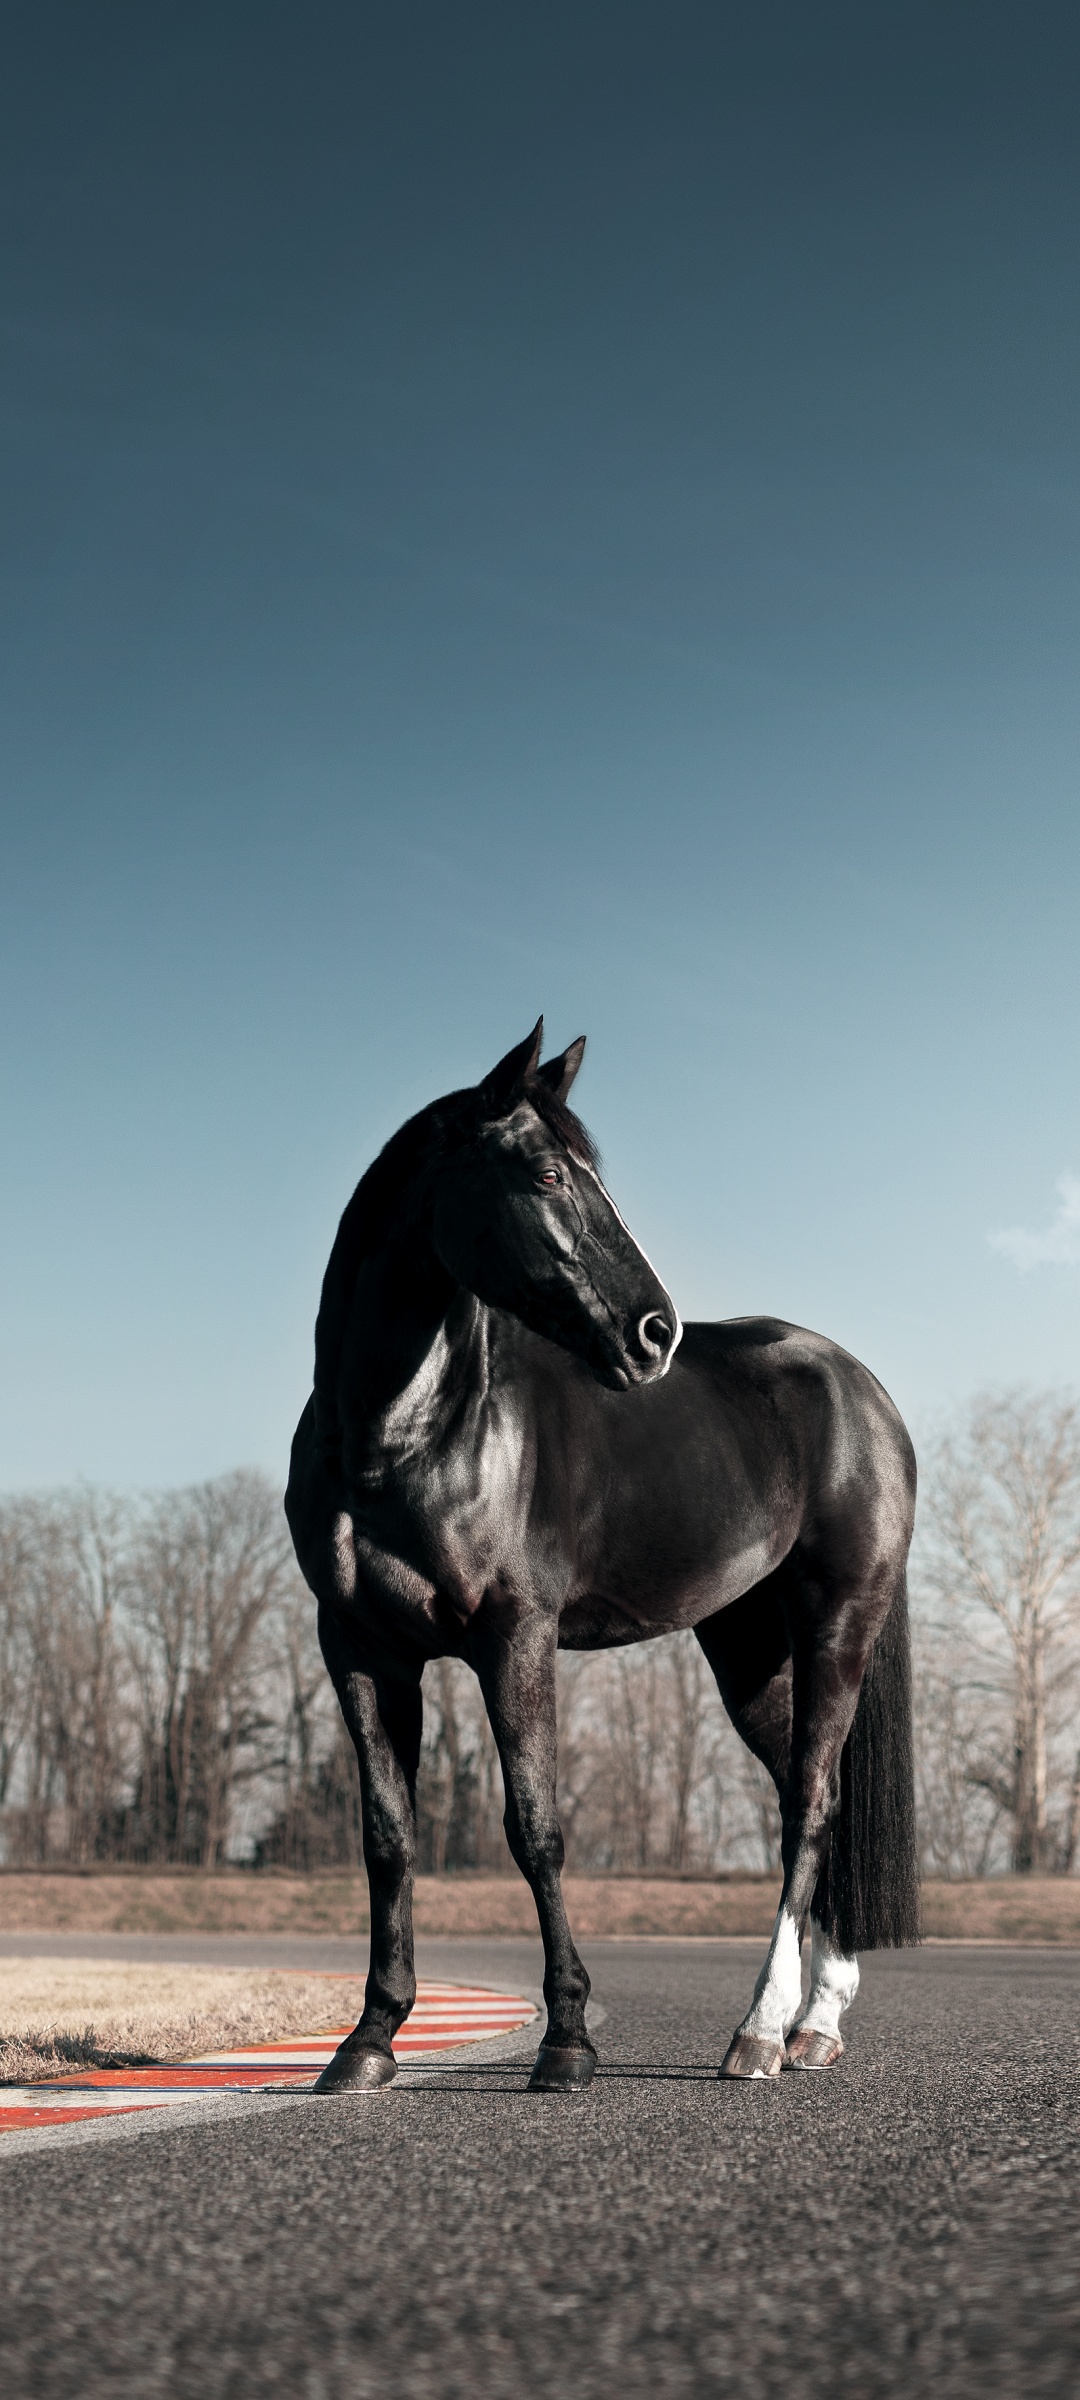 Horse wallpaper, Black horse, Horses